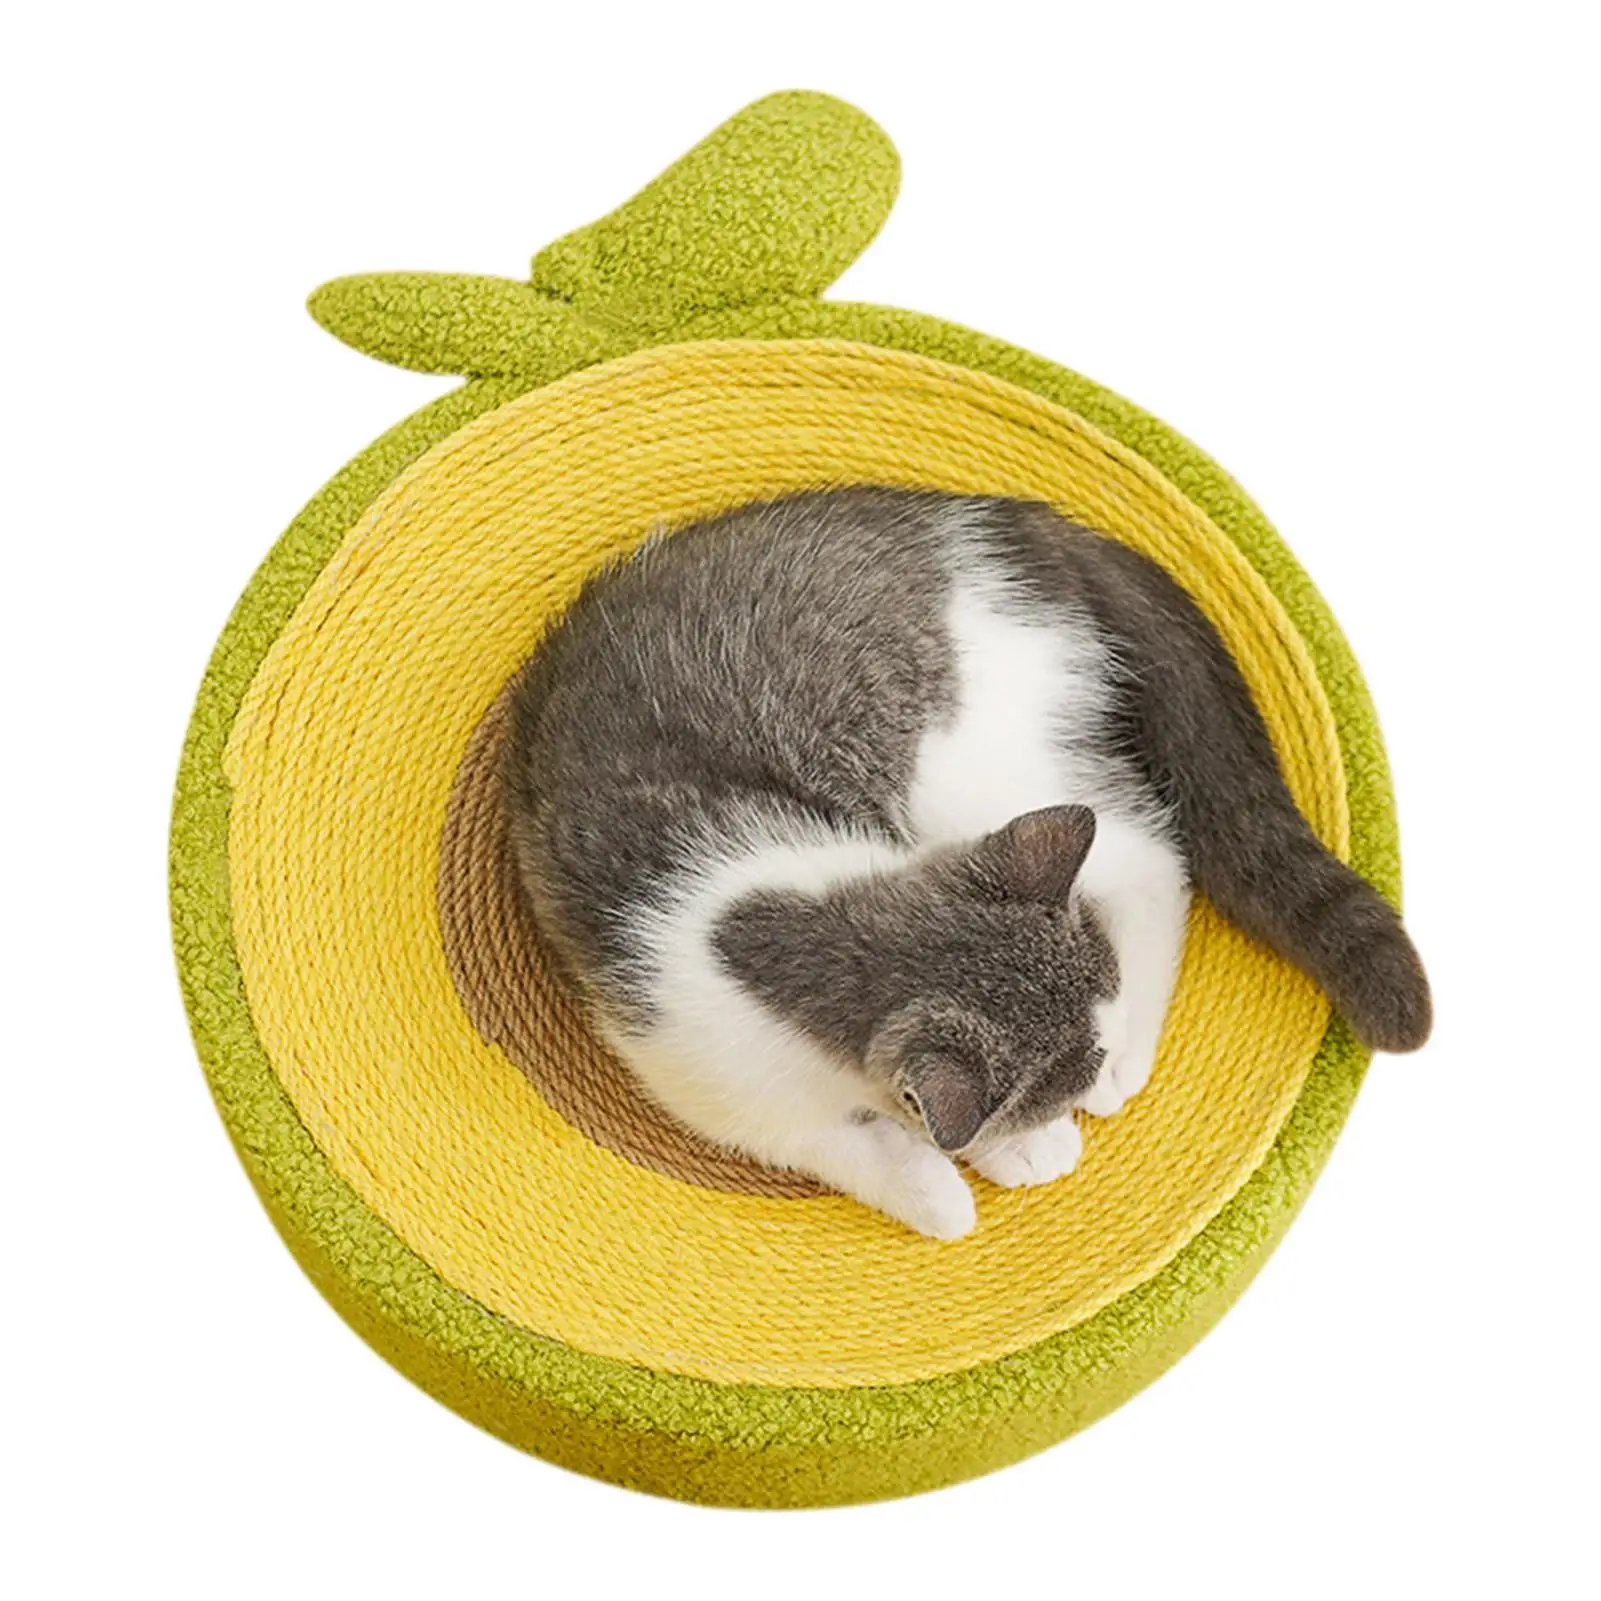 Kedi Scratcher Yatak 3 İn 1 Kedi Scratcher İle Tasarlanmış Sevimli Avokado Şekli Sevimli Kedi Scratcher Pet Eğitim Oyuncak Kapalı Kediler İçin